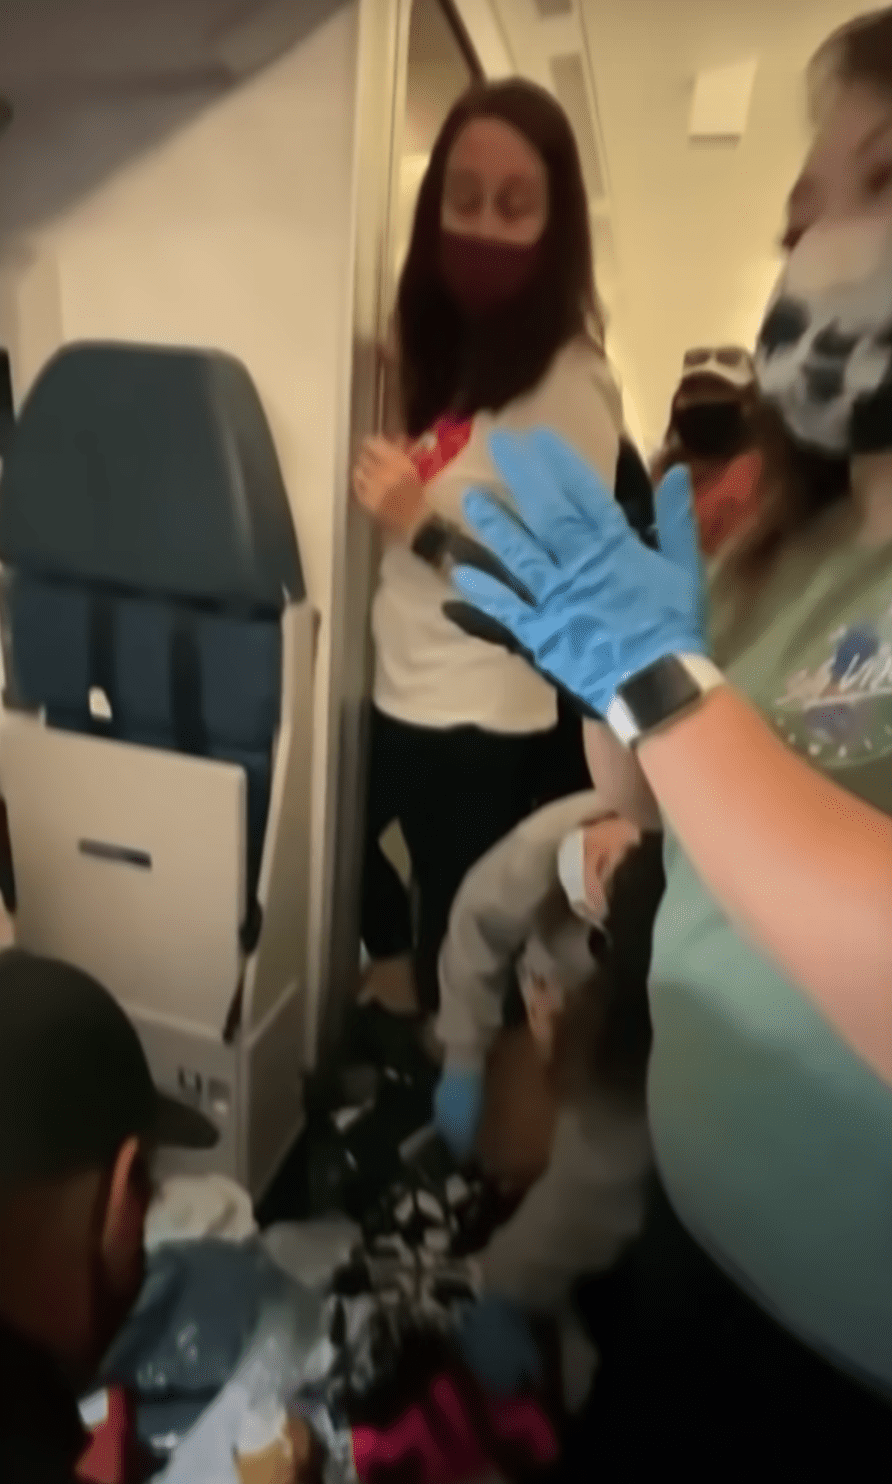 Enfermeras y médico ayudan a una mujer que dio a luz en pleno vuelo. | Foto: Youtube.com/TheEllenShow